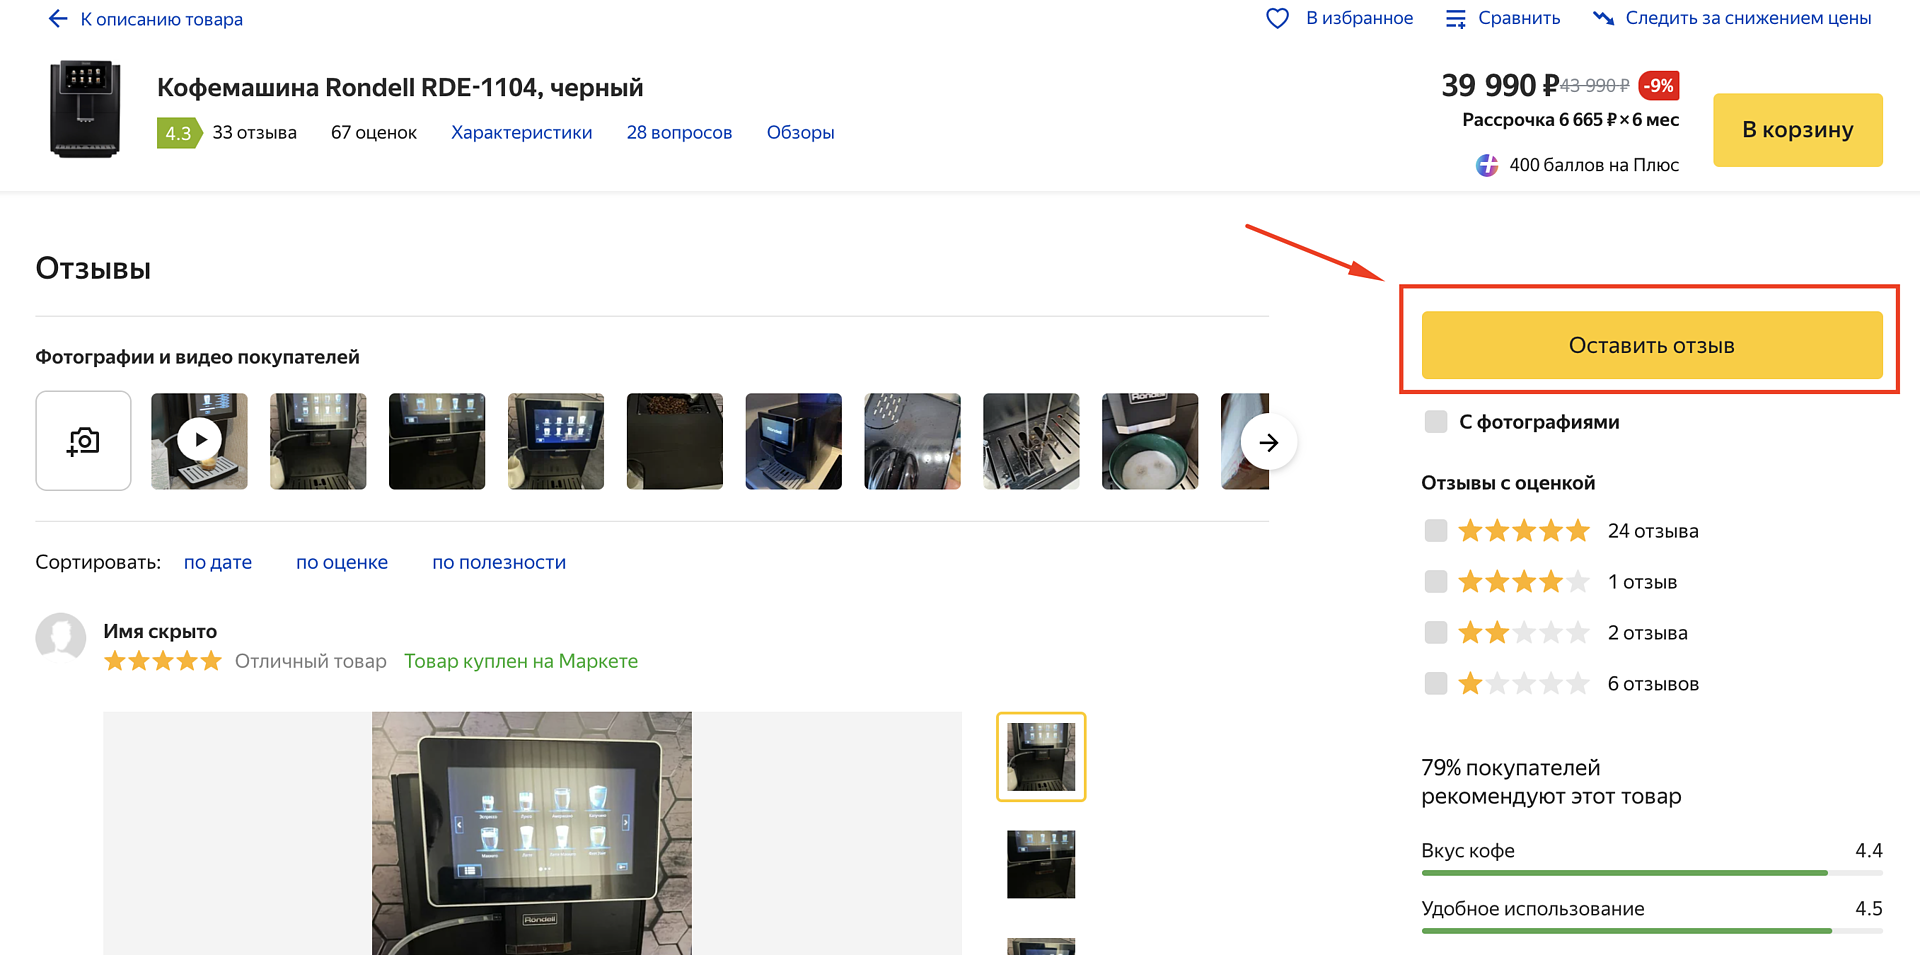 Как сохранить множество фото из Телеграм на luchistii-sudak.ru: пошаговое руководство